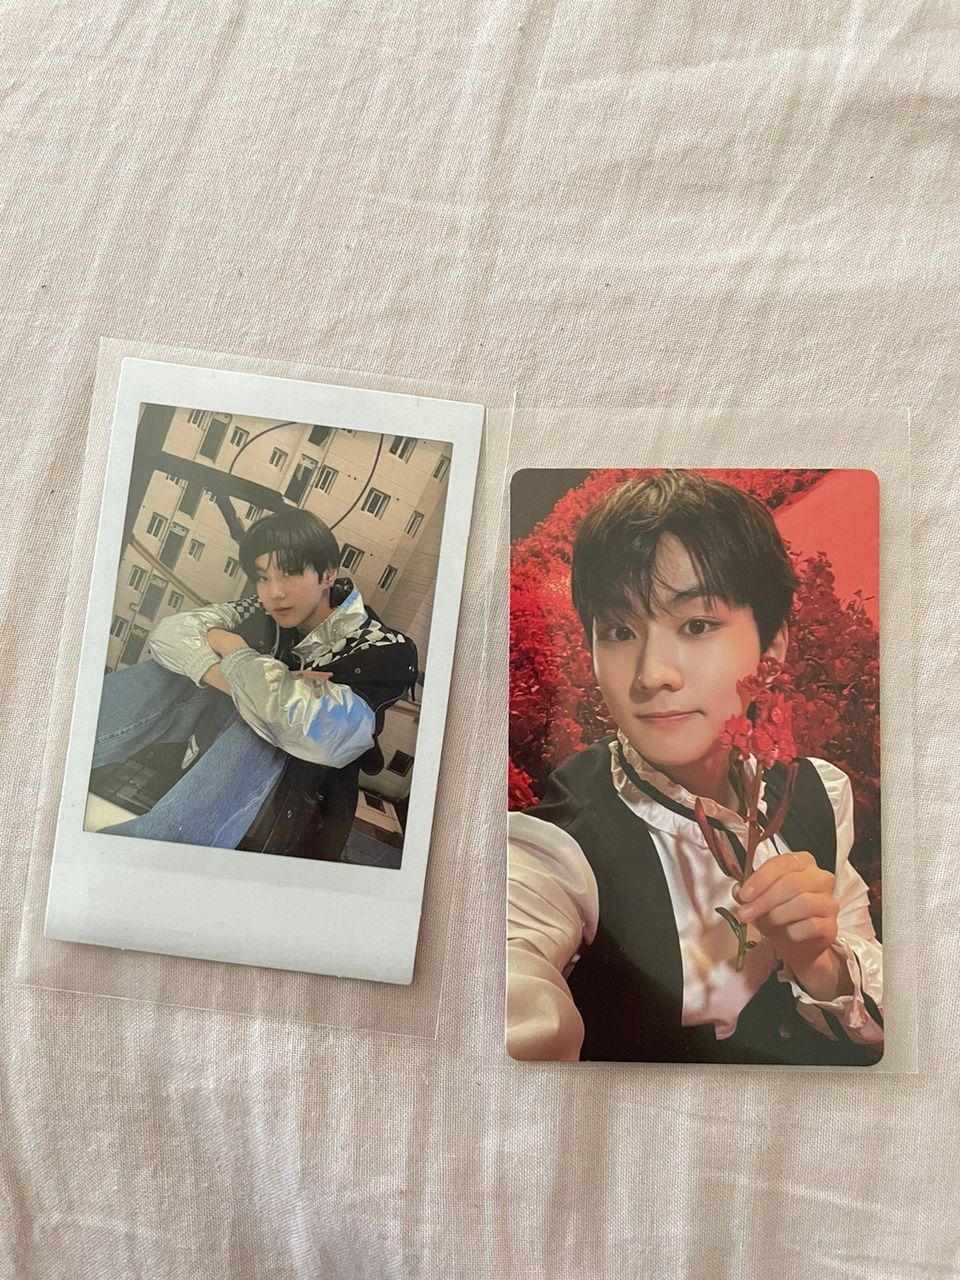 Kpop Enhypen jungwon photocard & polaroid